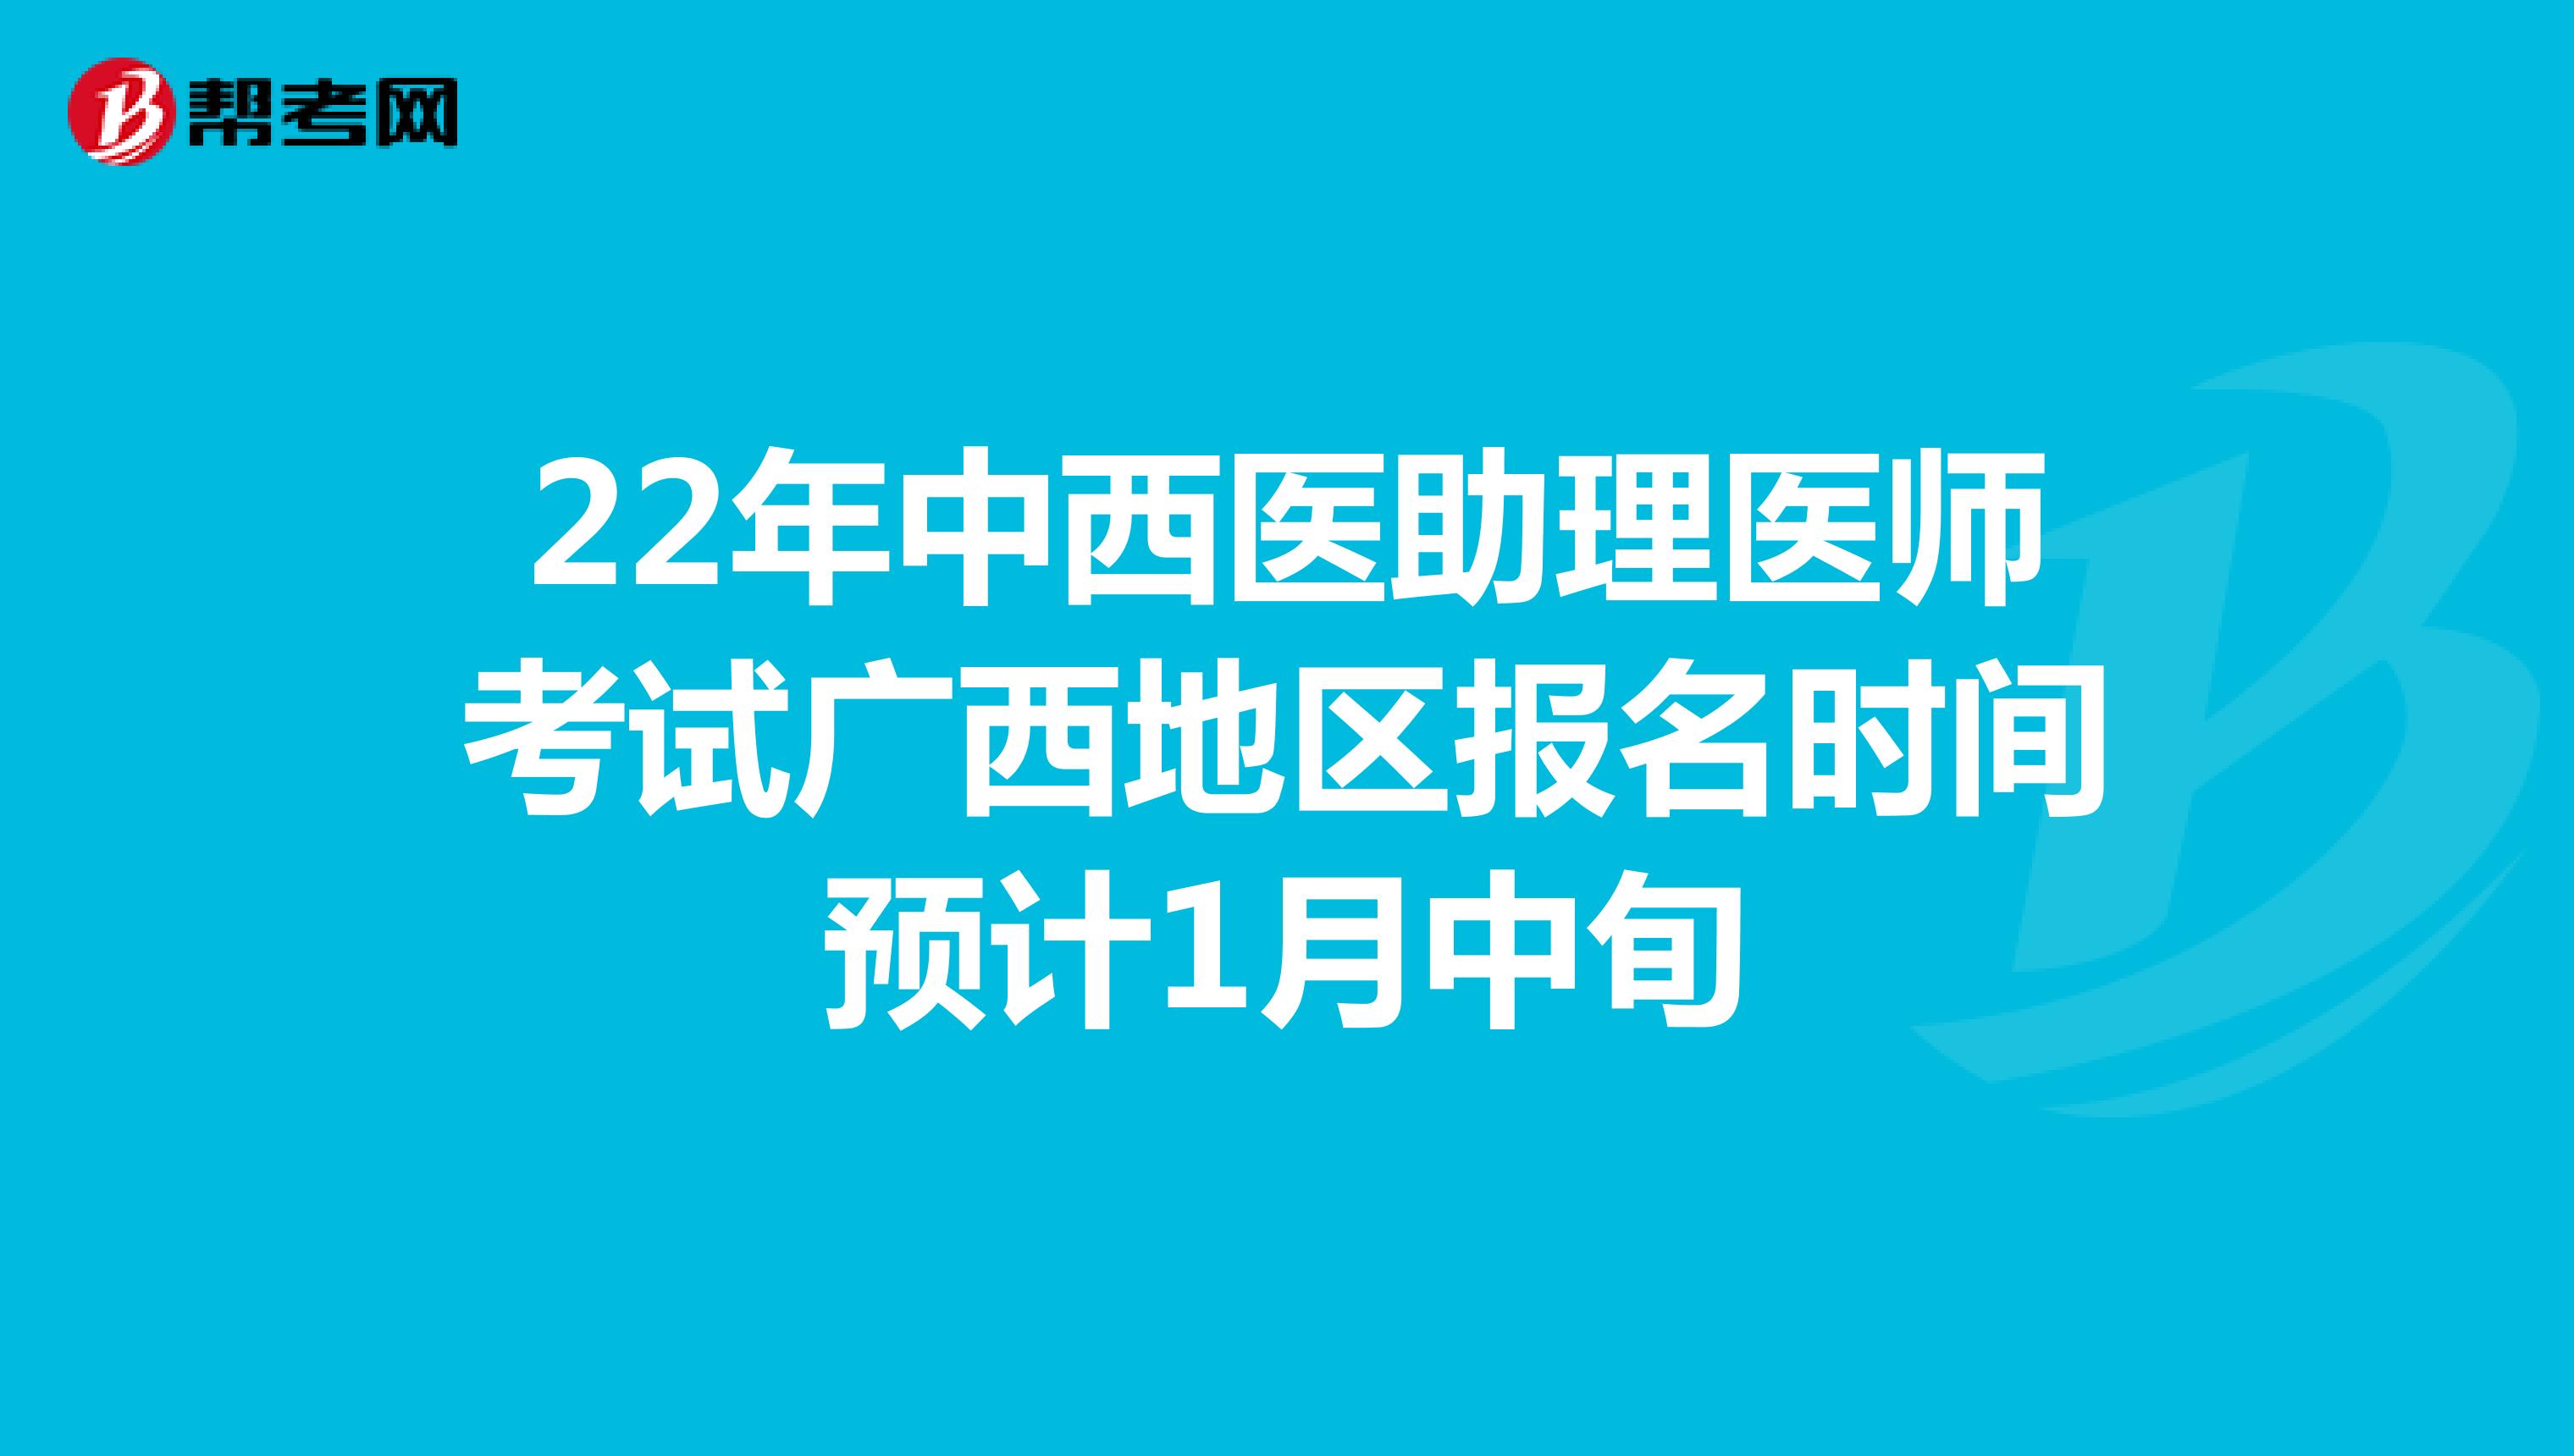 22年中西医助理医师考试广西地区报名时间预计1月中旬